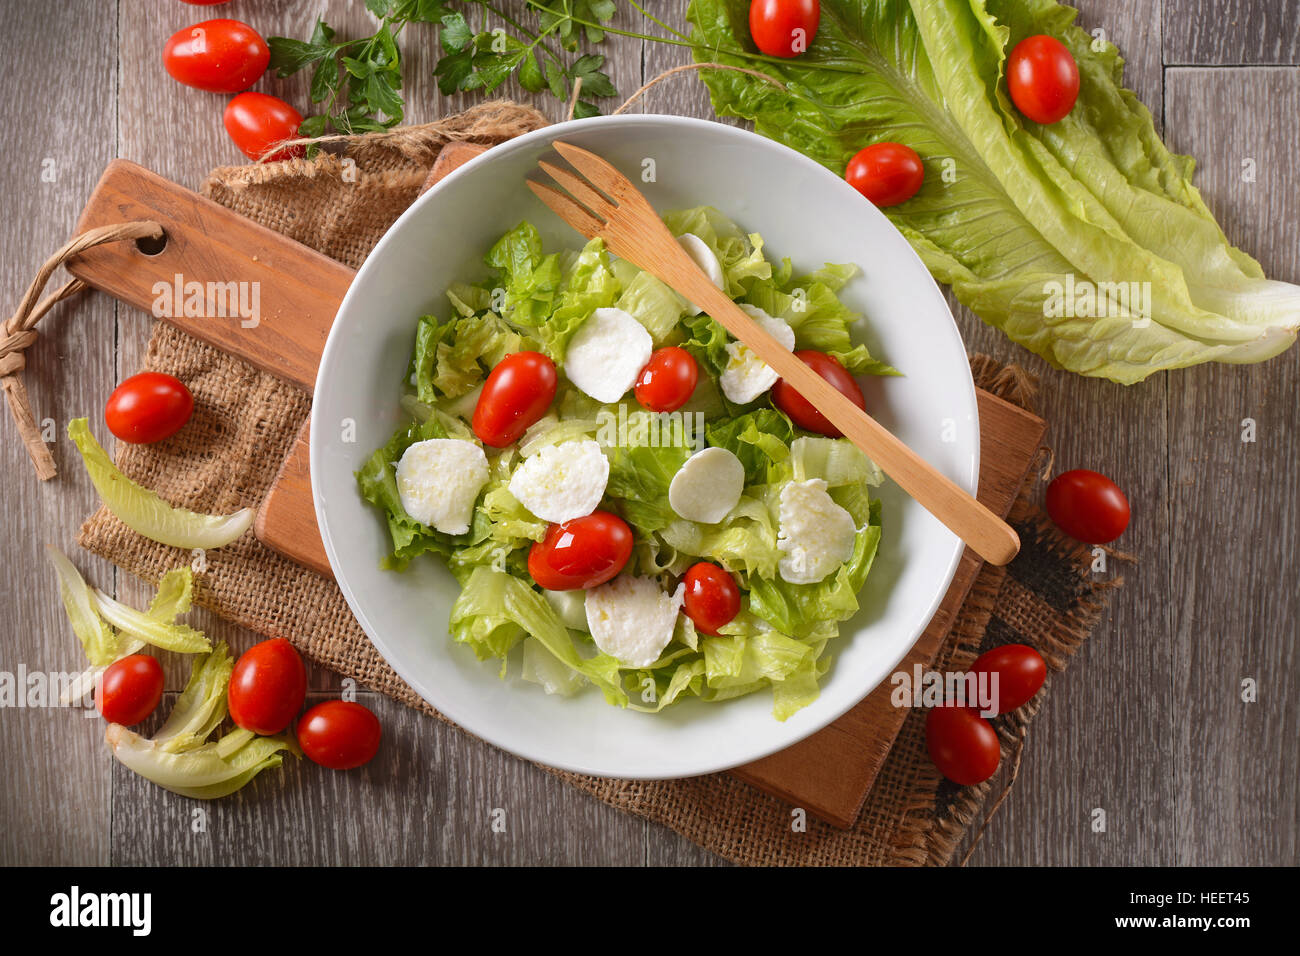 Insalata di lattuga, mozzarella e pomodoro - tradizionale ricetta italiana Foto Stock